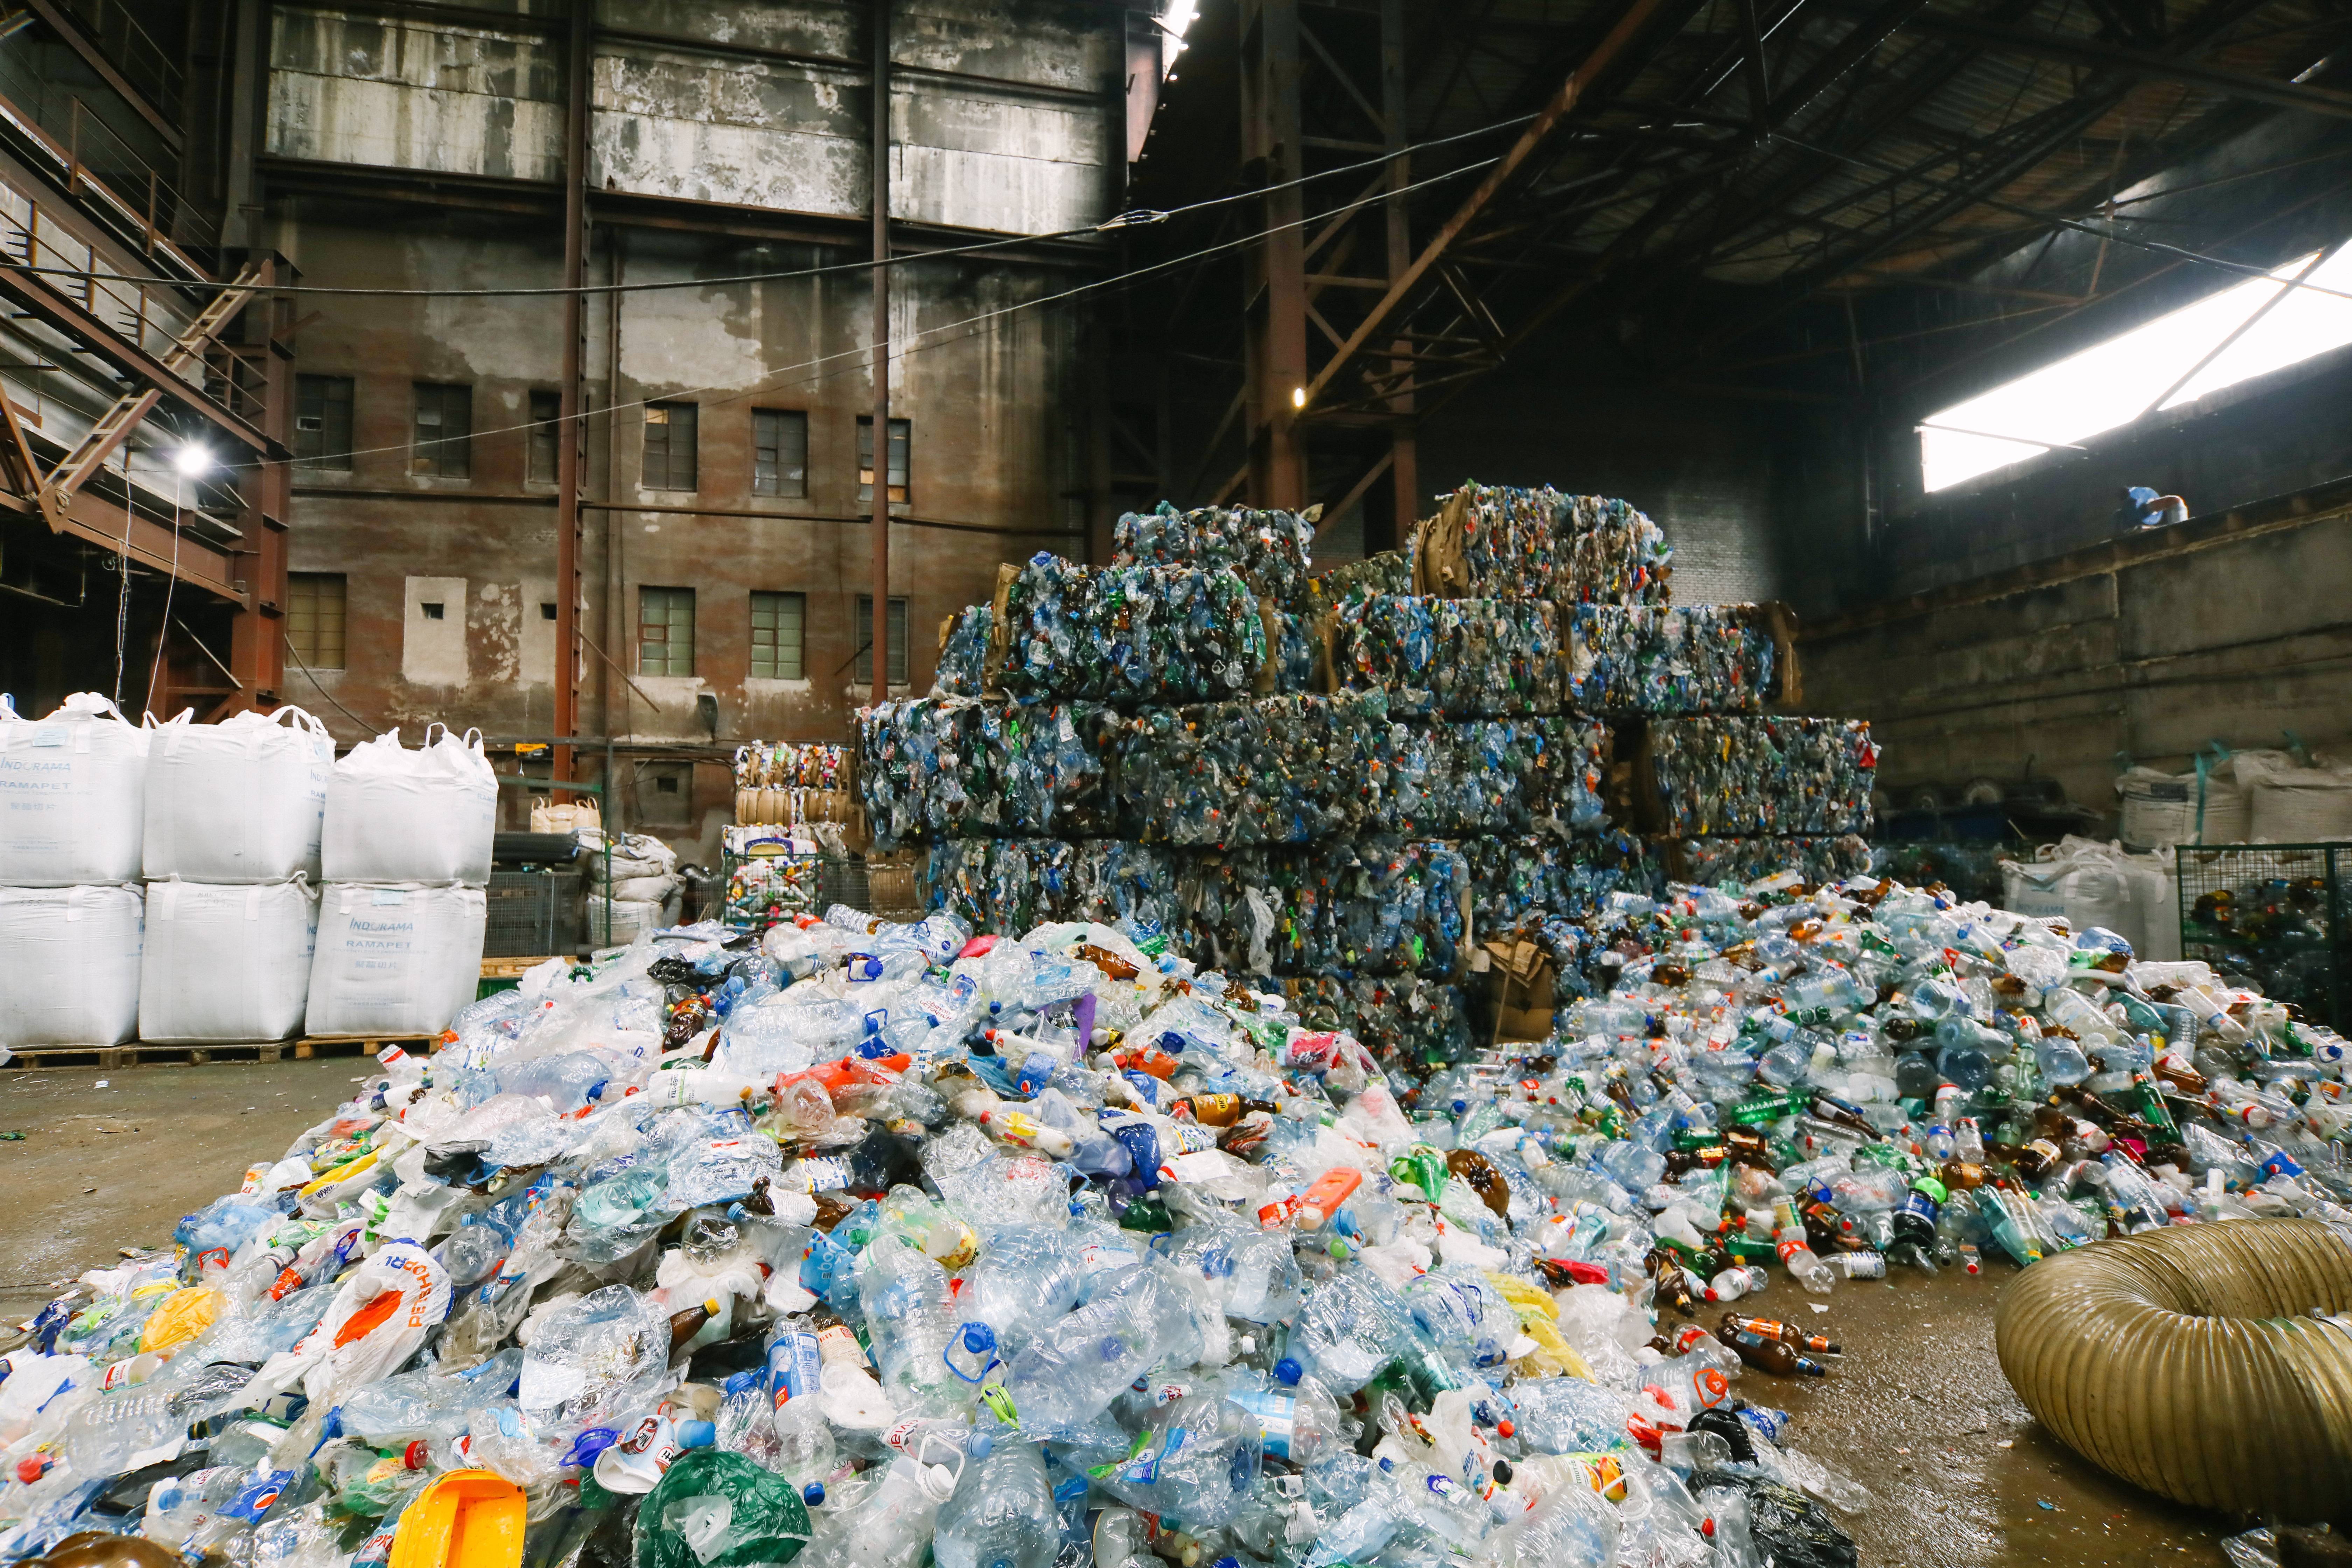 ♻ переработка пластика ▶ как бизнес ▶ отзывы ▶ переработка пластика в домашних условиях и на минизаводе